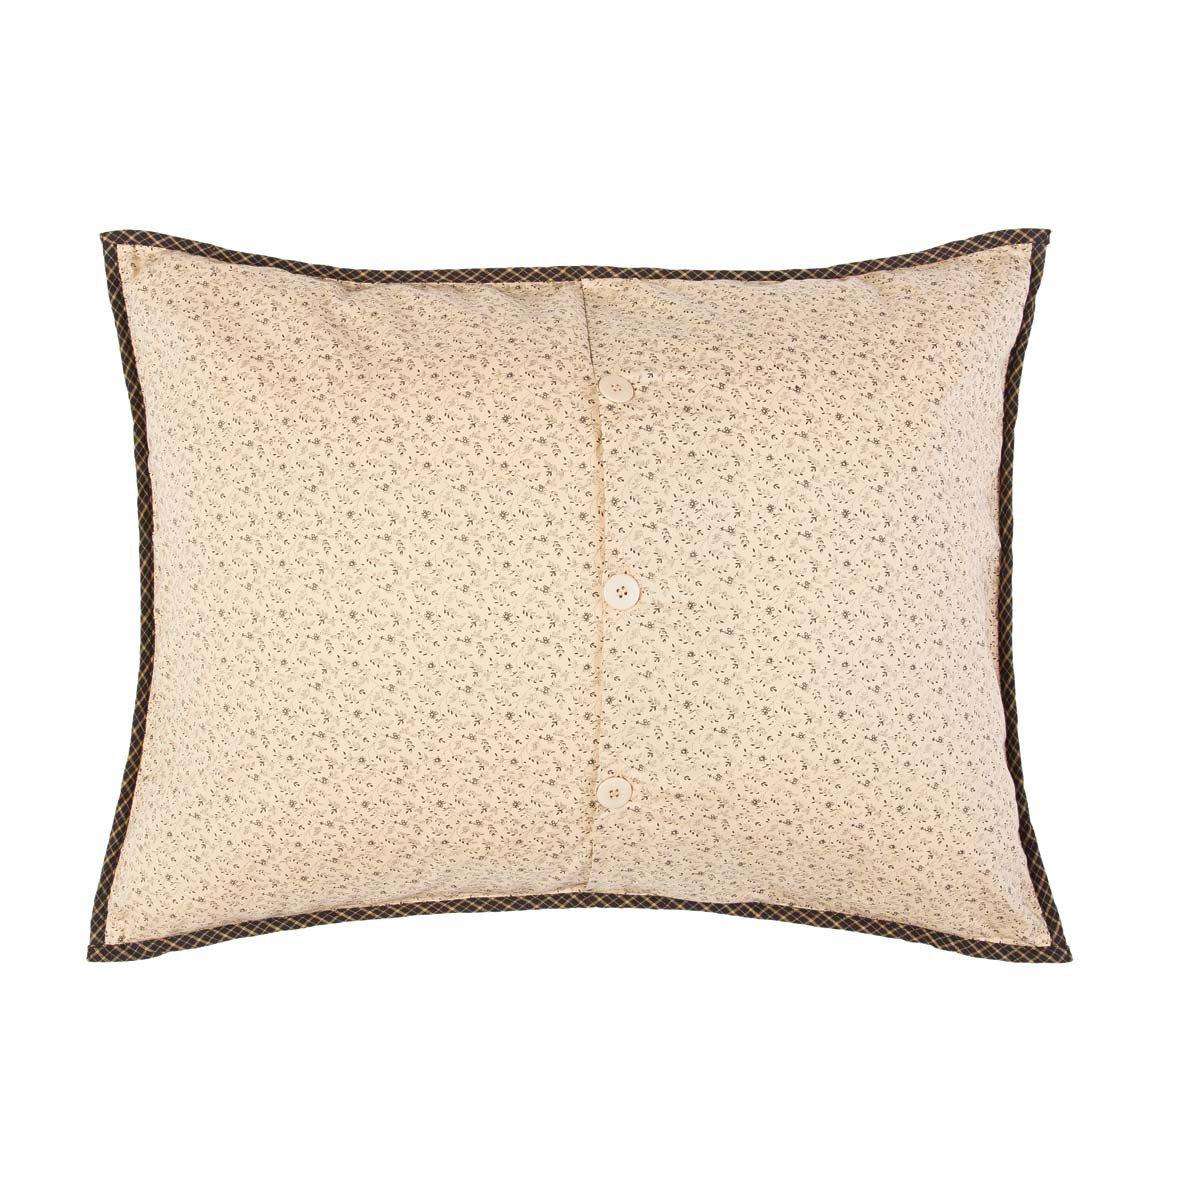 Kettle Grove Pillow Sham Bedding VHC Brands 